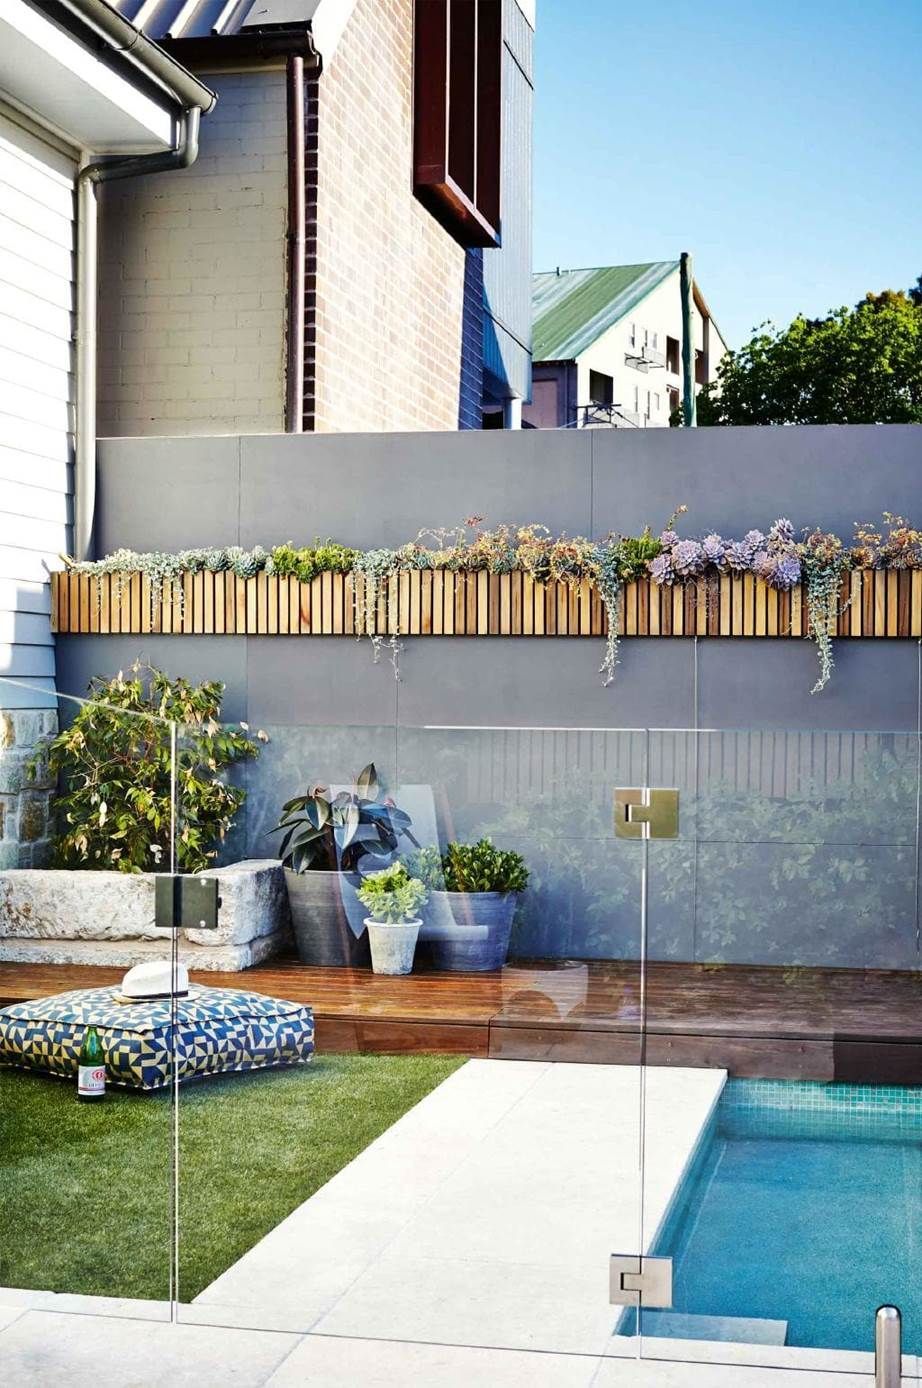 12 vertical garden ideas to inspire your own green wall -   11 garden design Pool fence ideas